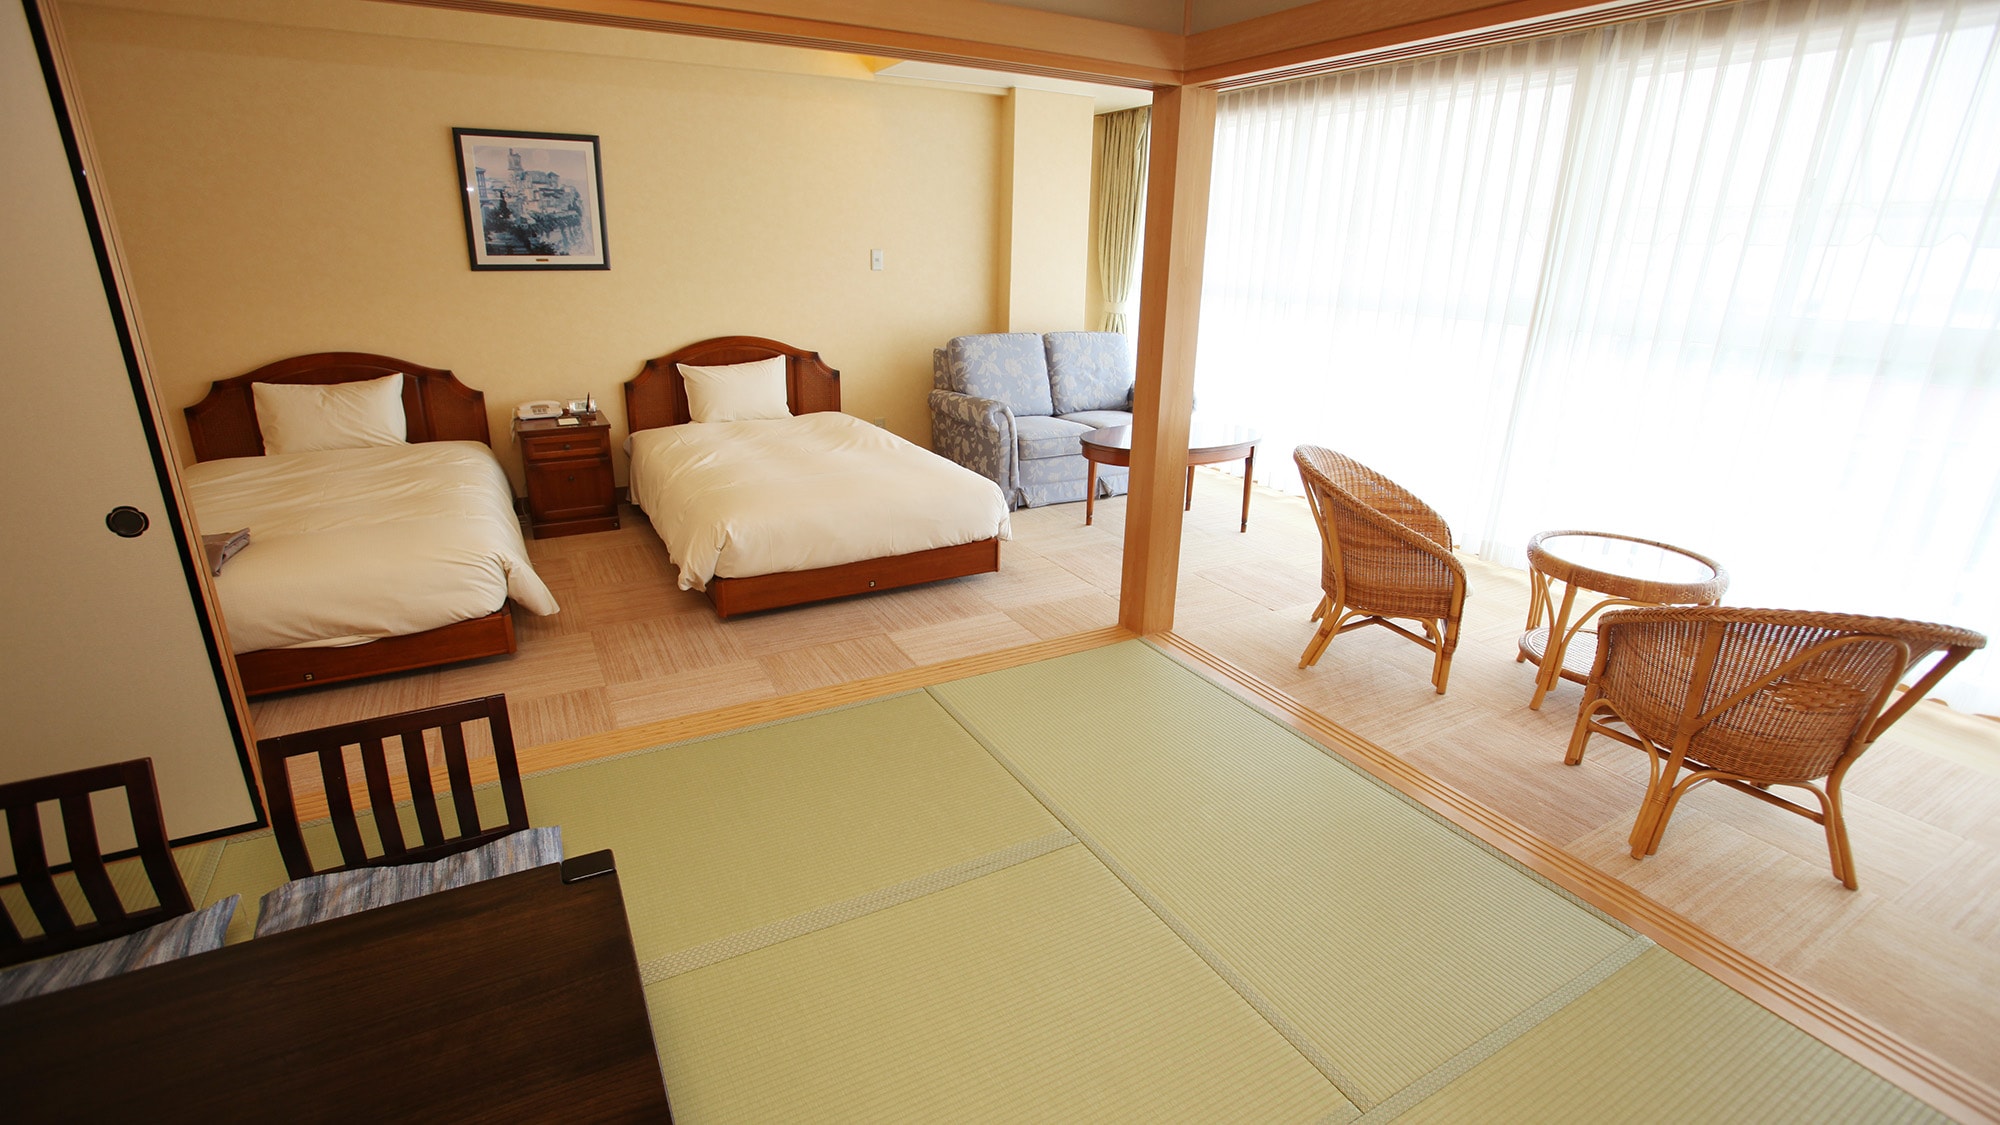 * & lt; 日式和西式房間的例子 & gt; 日式和西式的融合 ♪ 睡覺時一張床，放鬆時一張榻榻米 ♪ 這是一個會實現的房間。